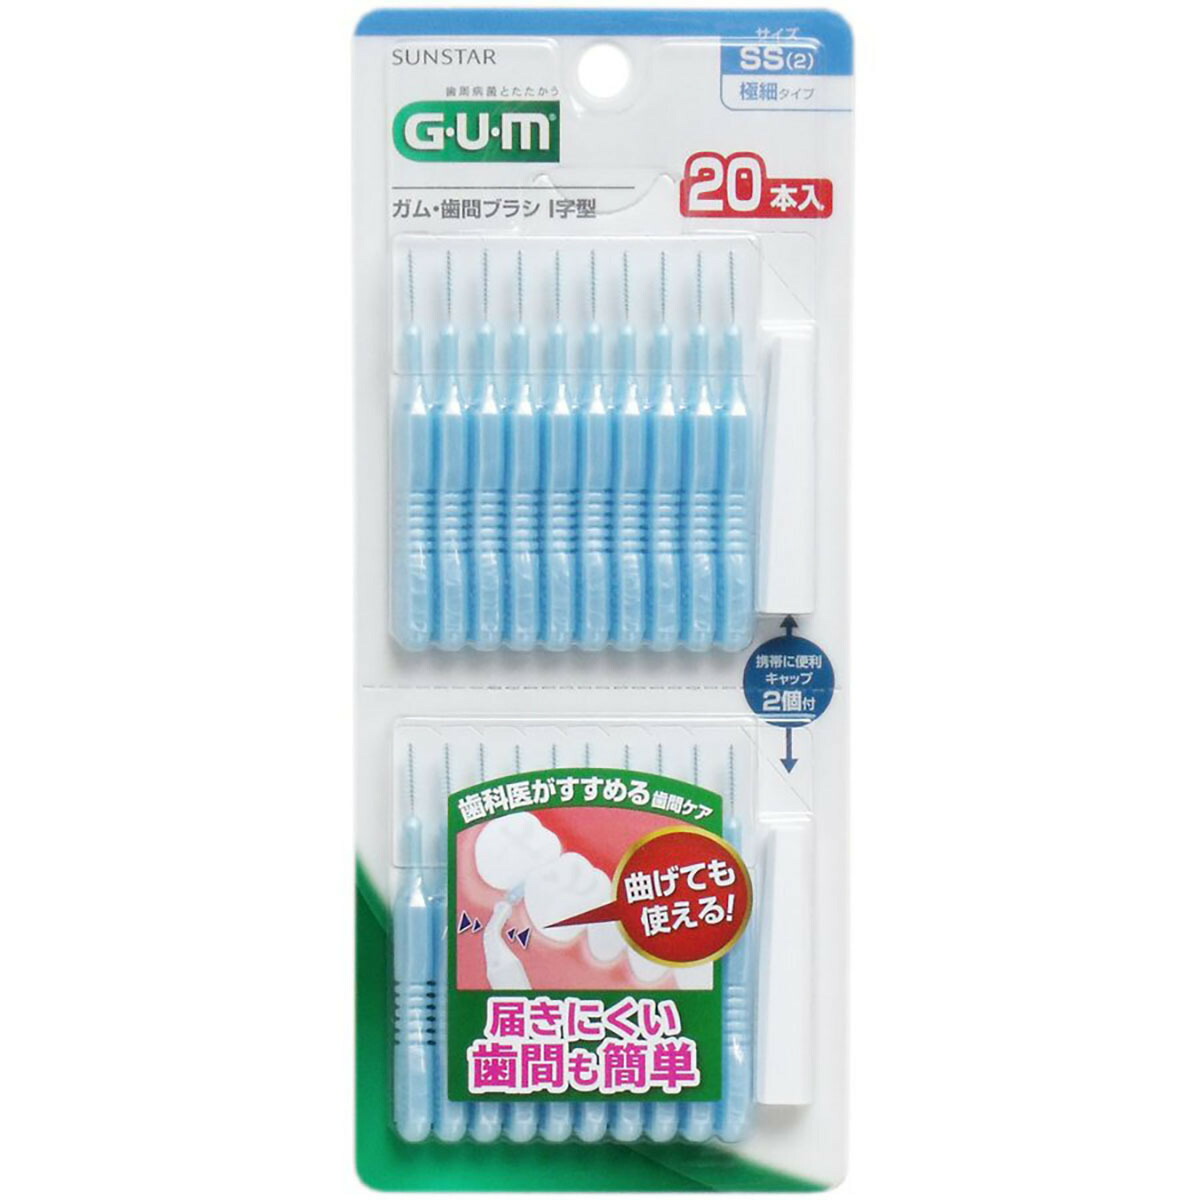 「GUM ガム･歯間ブラシ I字型 SSサイズ 20本入 」  